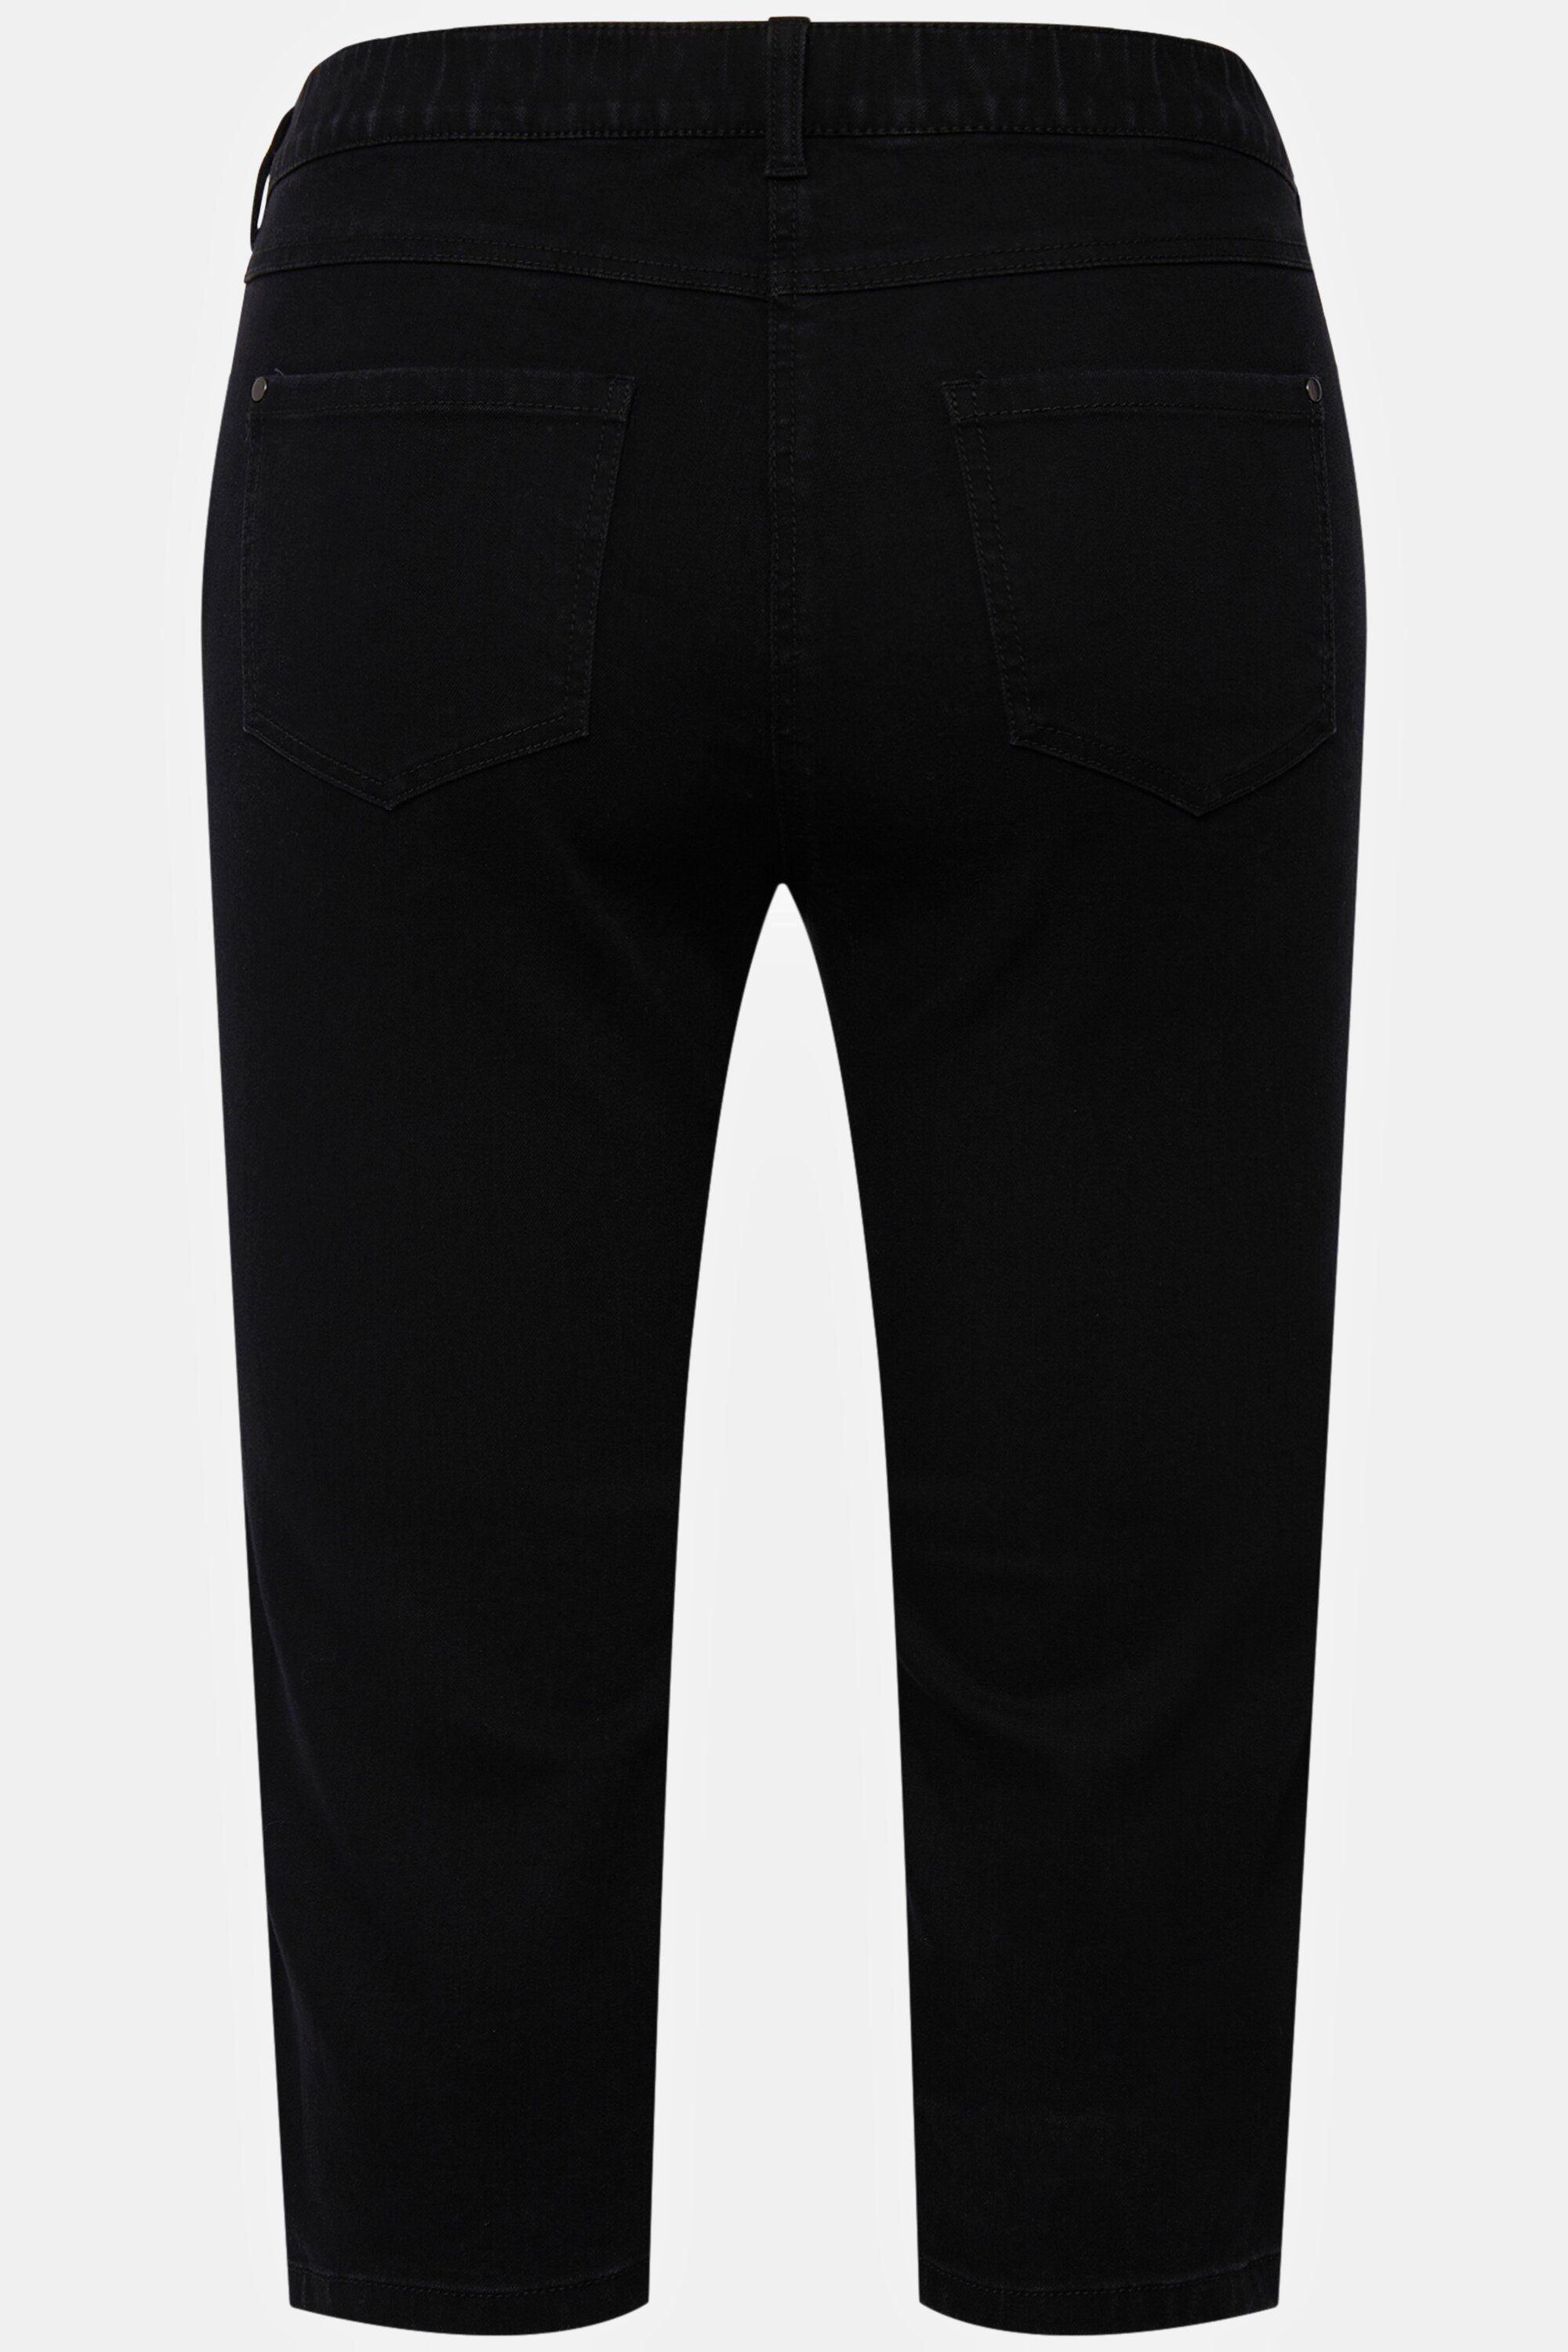 Ulla schmale Capri 5-Pocket-Form Popken Jeans Sarah Funktionshose schwarz